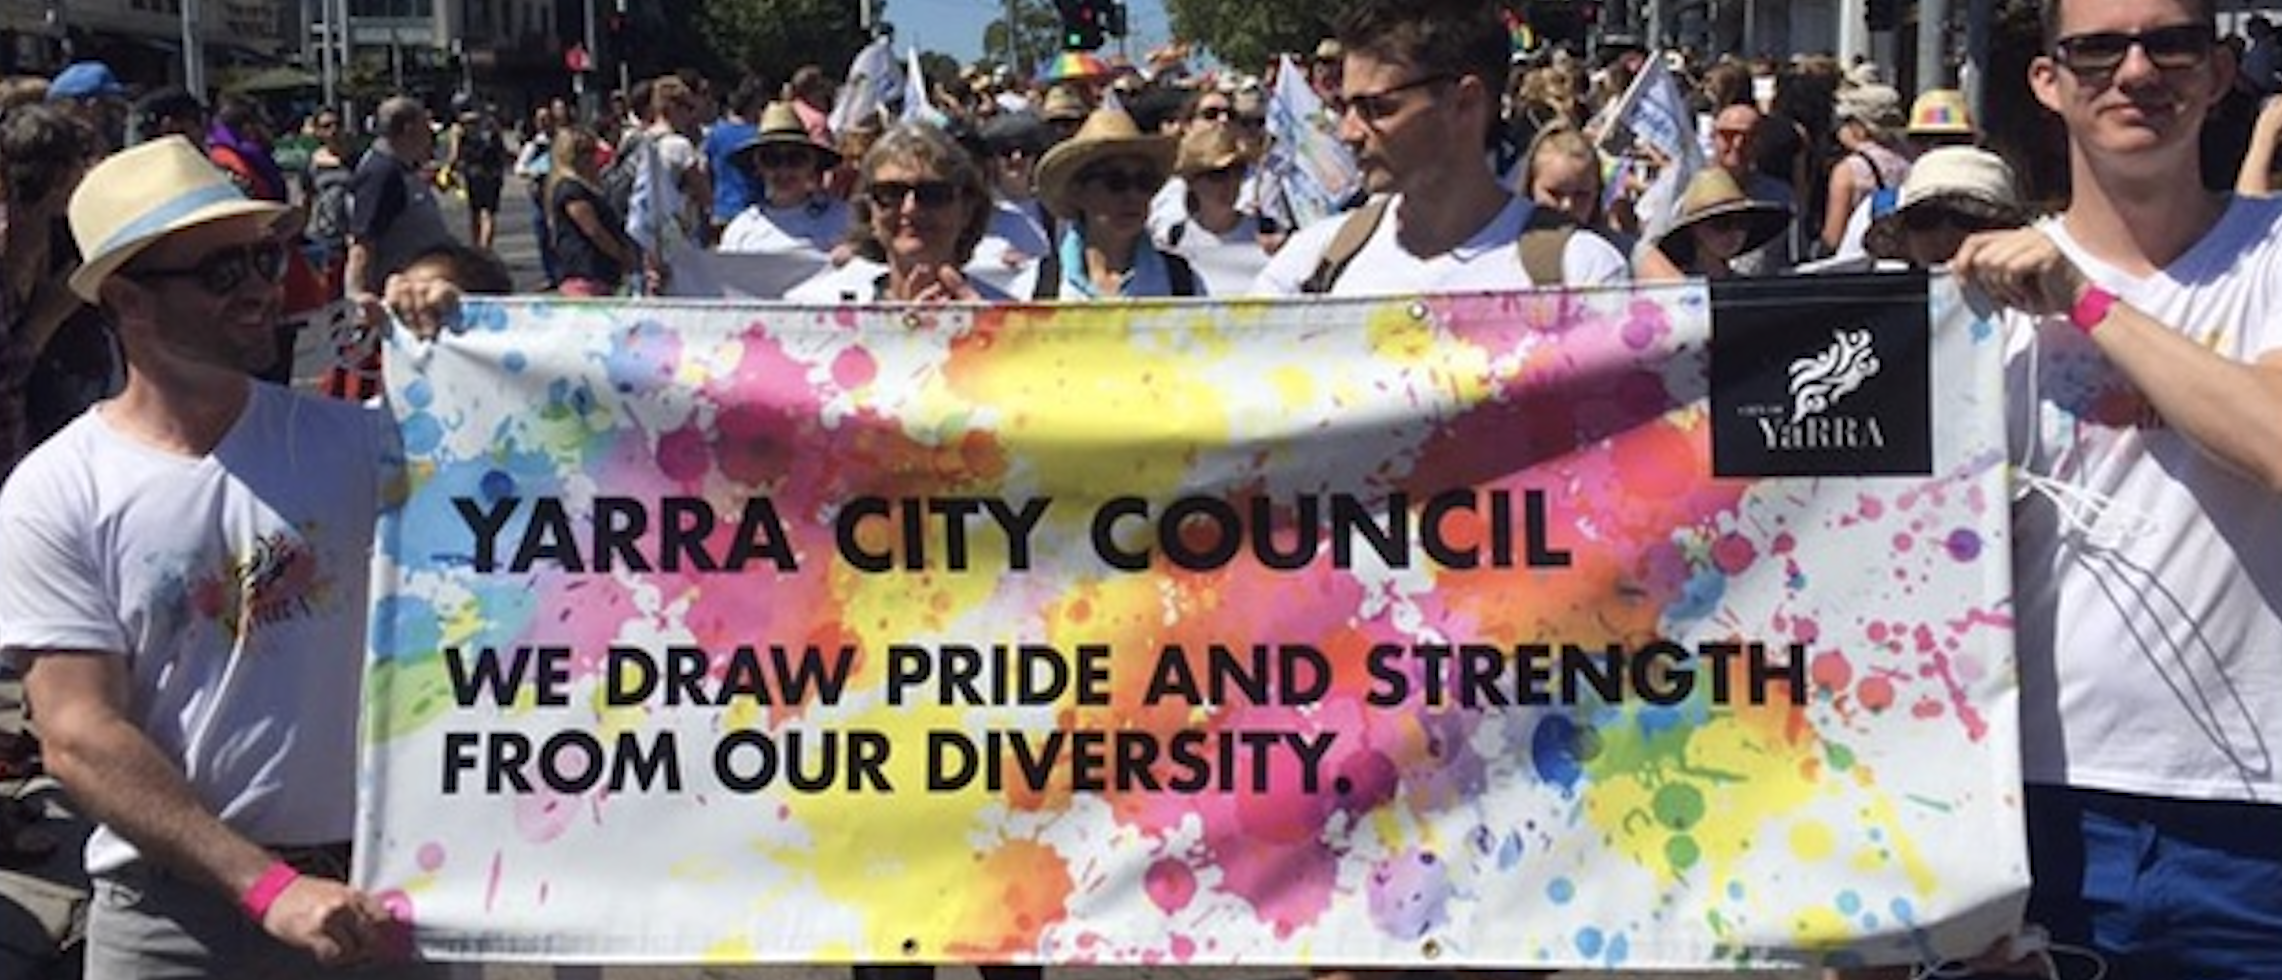 City of Yarra is queering the neighbourhood